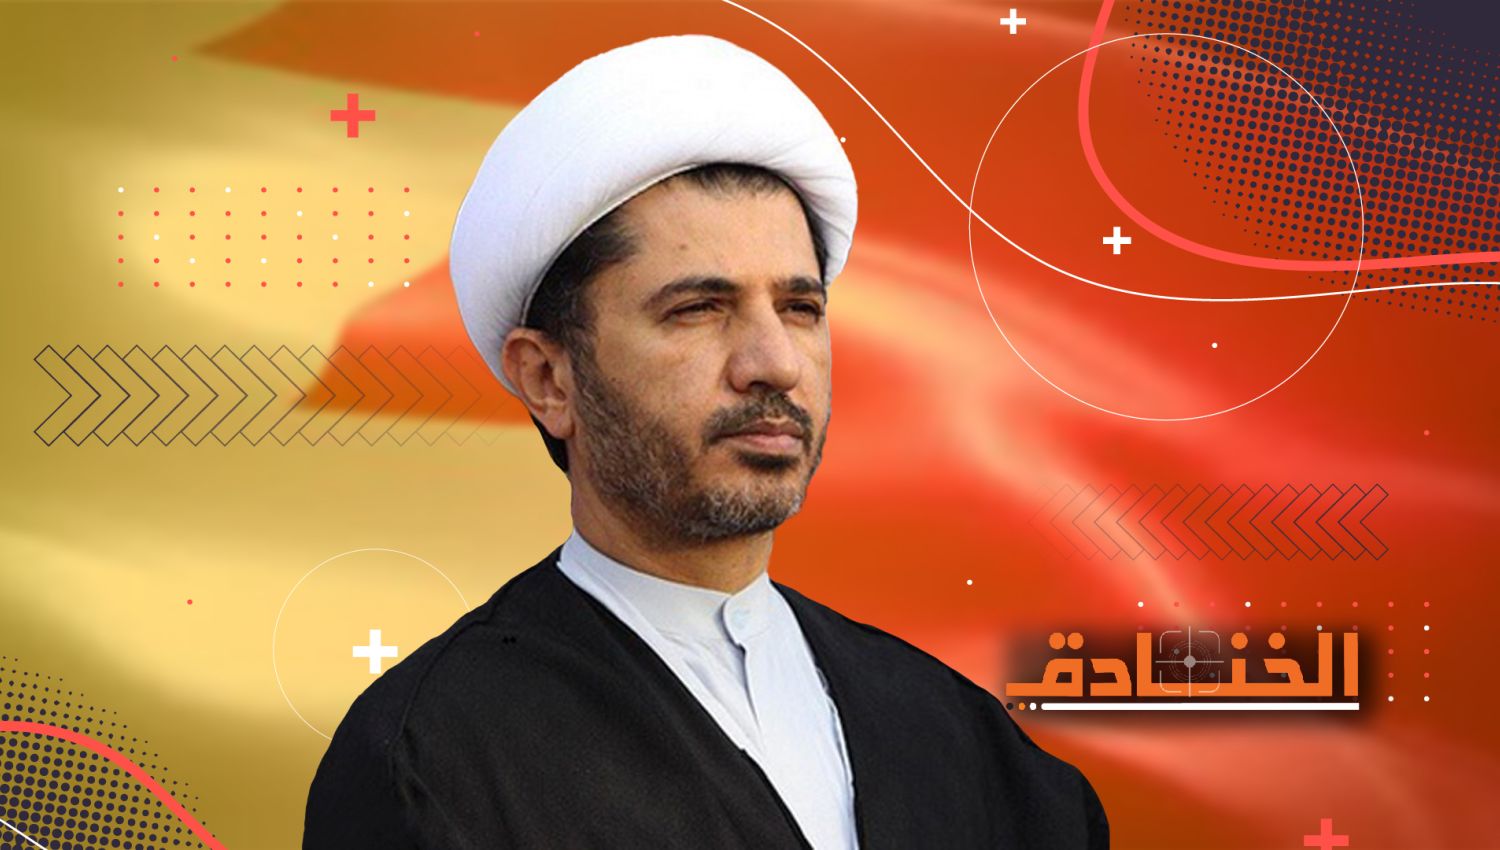 الشيخ علي سلمان: رائد الثورة السلمية لتحصيل الحقوق